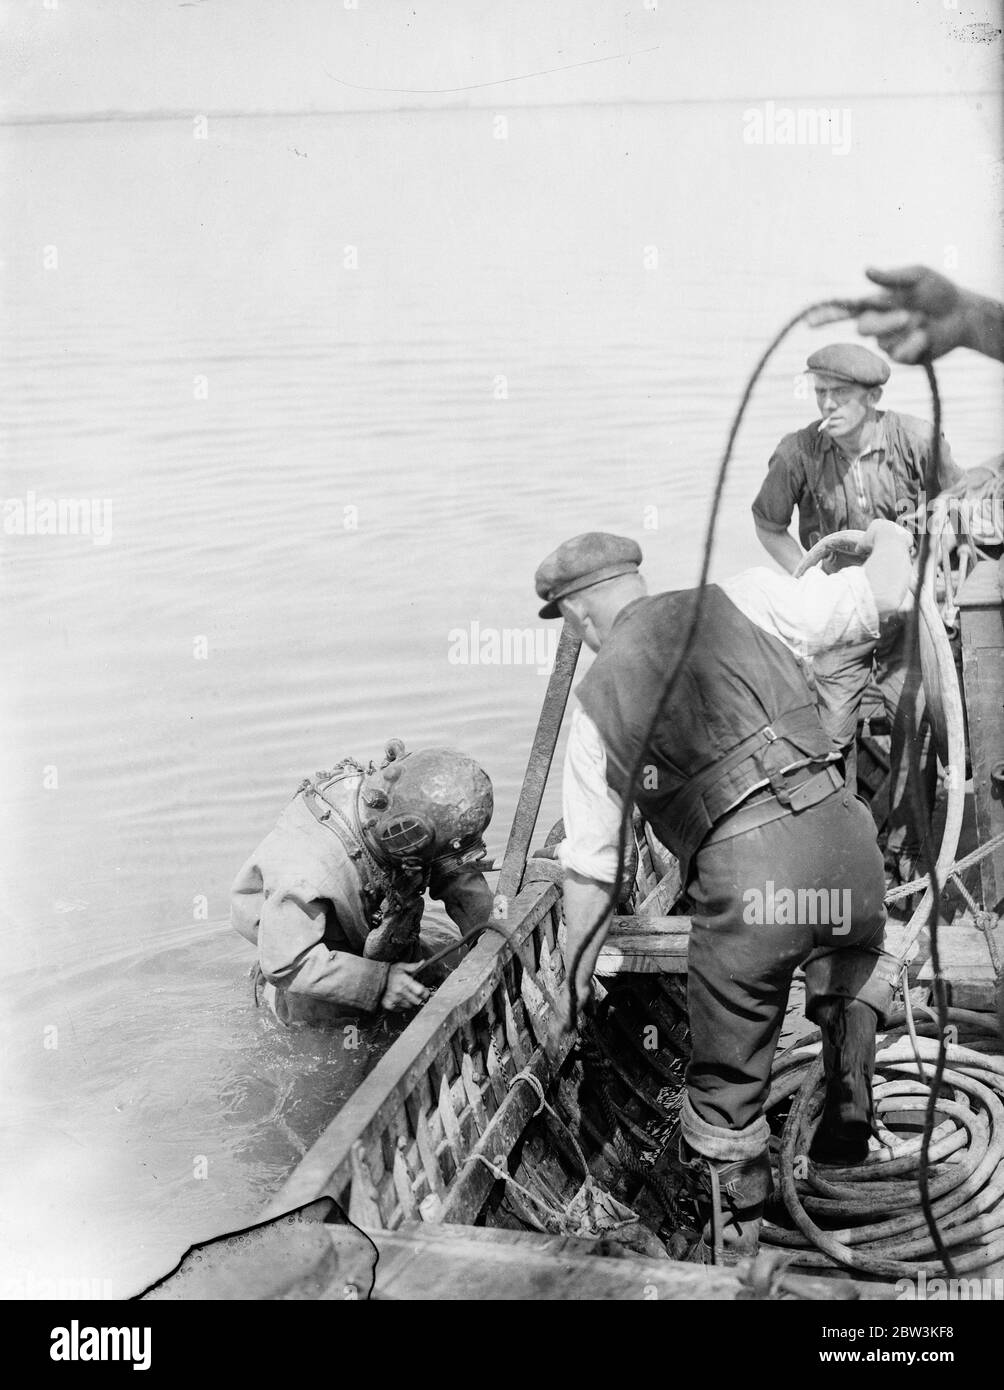 Récupération du HMS bulwark après 21 ans d'explosion mystère en temps de guerre qui a coûté 760 vies . A huit miles de Sheerness des opératons de récupération de l'ancien moniteur Humber ont commencé sur le HMS Bulwak , le navire de guerre coulé par une explosion mystérieuse avec la perte de 780 vies dans les premiers jours de la Grande Guerre . Les plongeurs ont commencé leurs examens de l'épave , qui se trouve sept brasses au fond de la rivière Medway , et une grue à vapeur de 60 tonnes a été érigée pour enlever les précieuses plaques d'acier blindées et les tourelles de canon qui doivent être blalées . Photos montre , le plongeur M. Dan God Banque D'Images